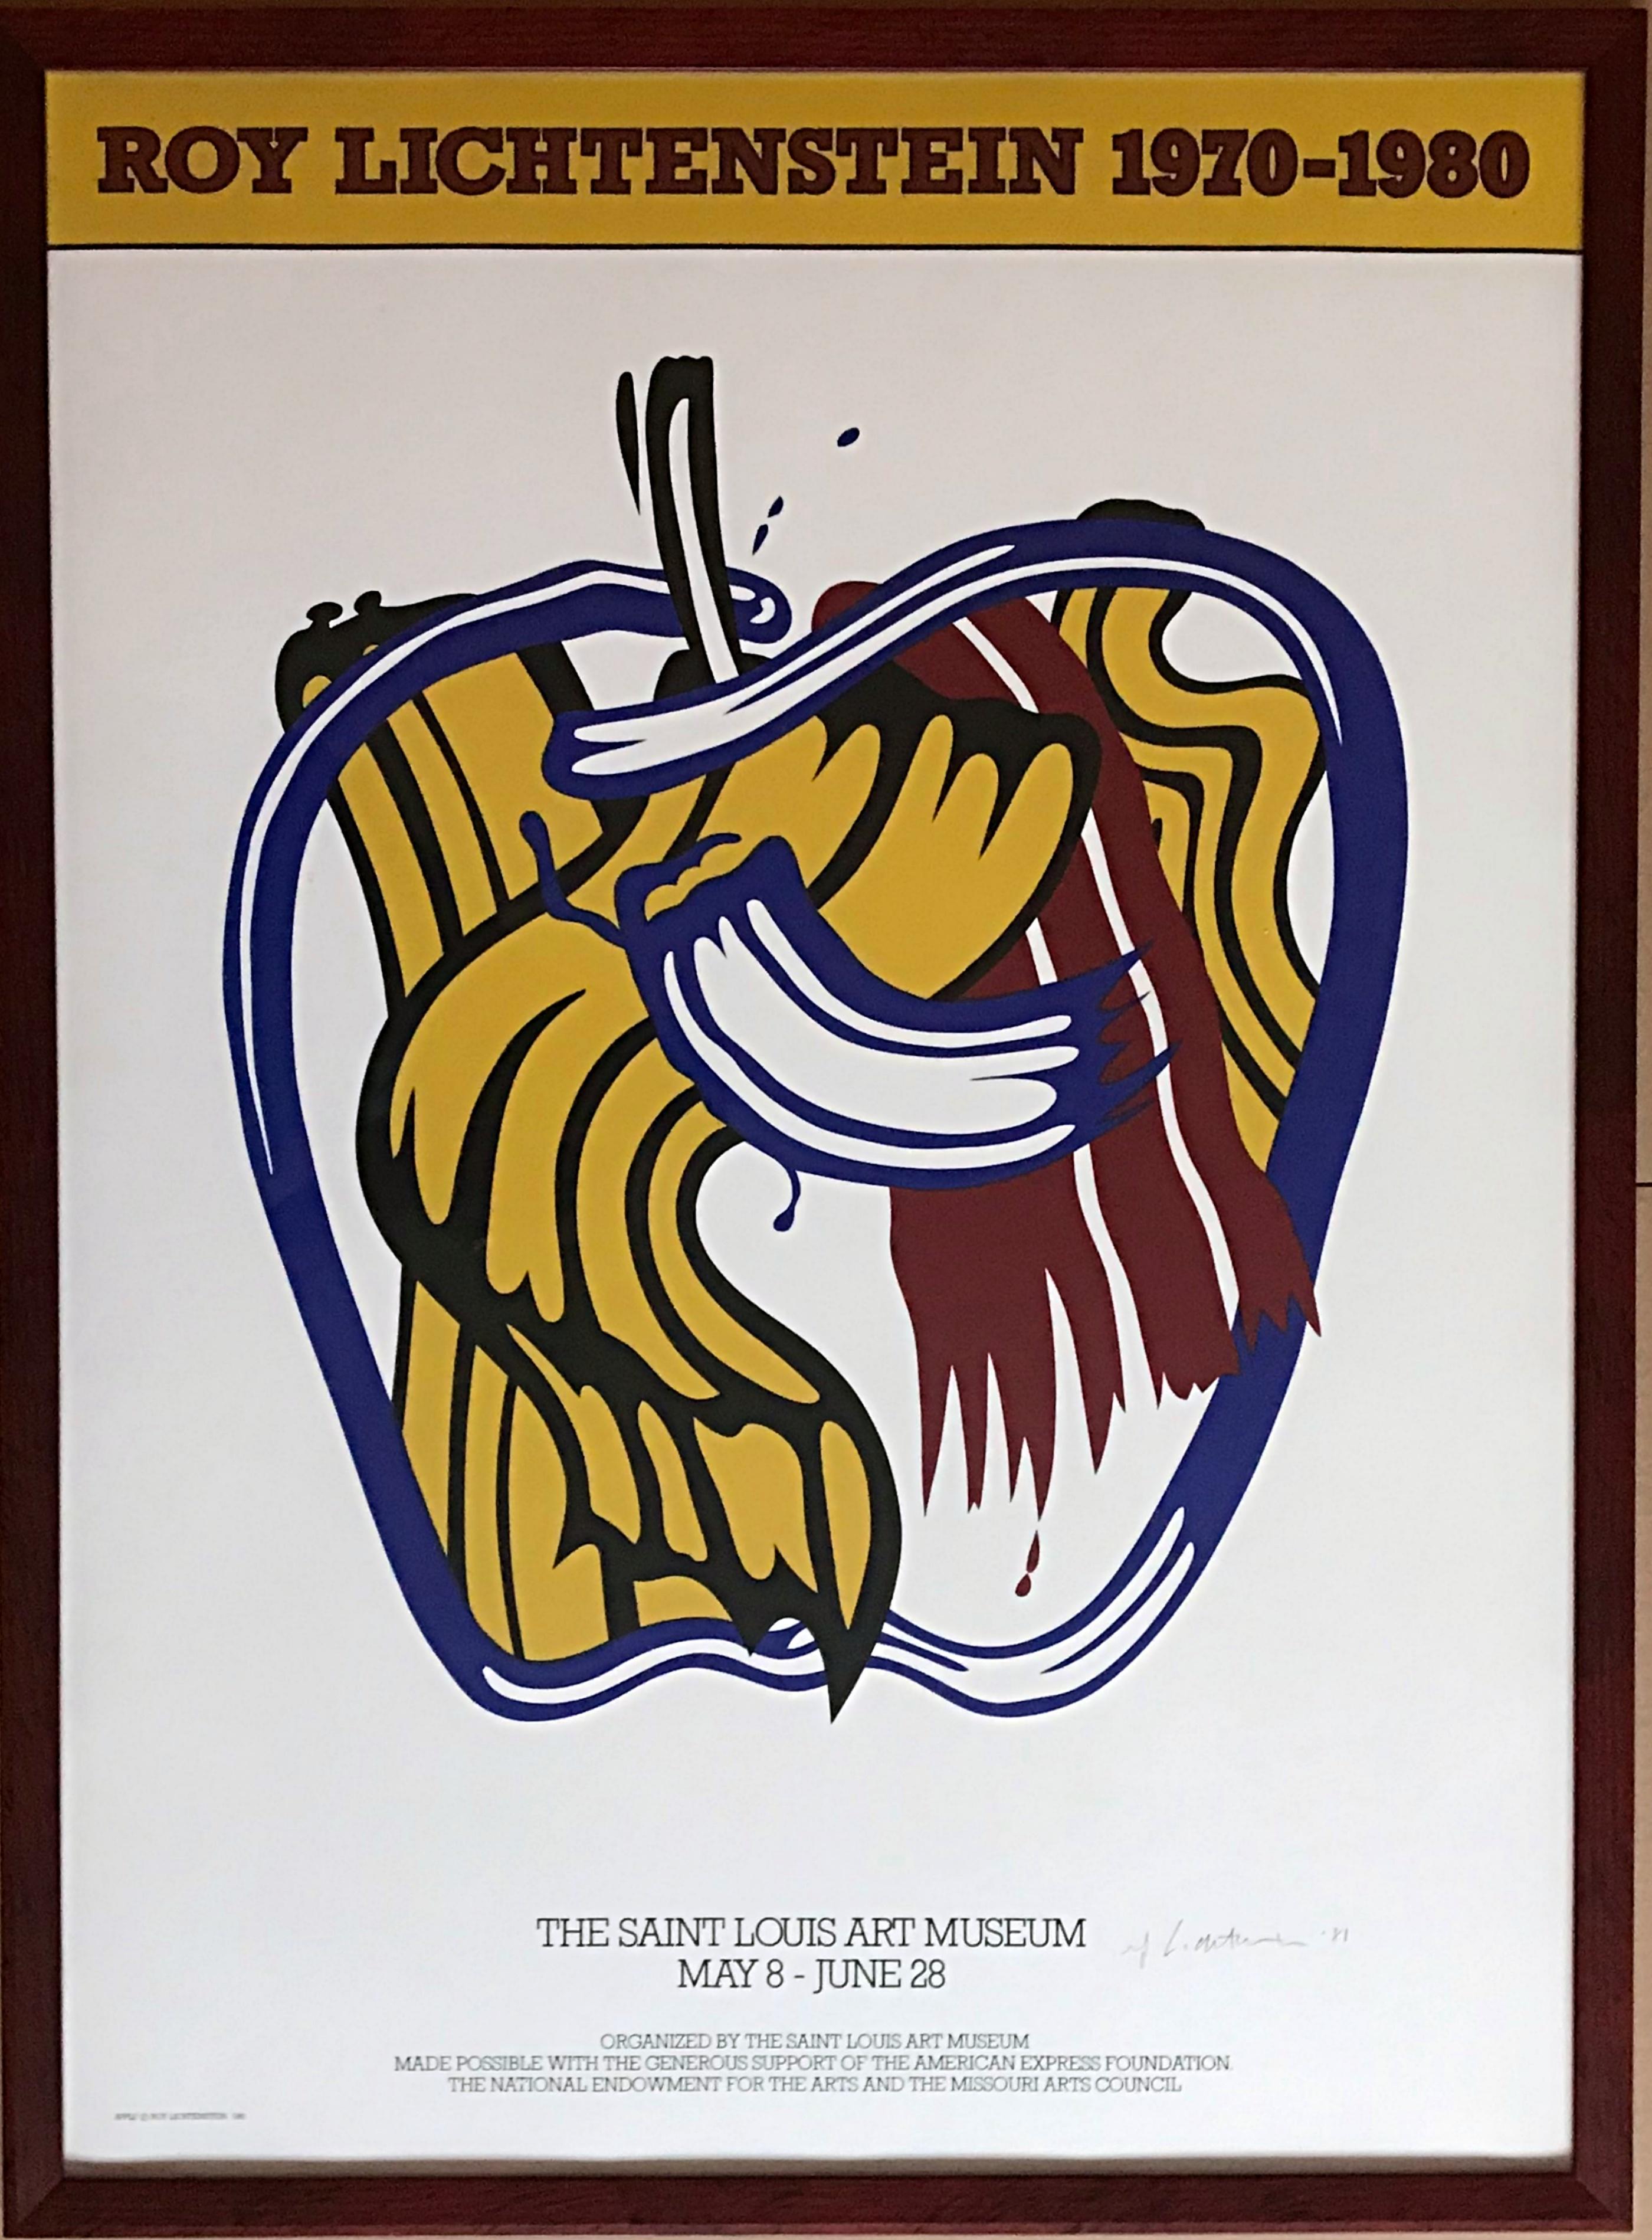 Roy Lichtenstein 1970-1980 (handsigniert und datiert von Roy Lichtenstein), 1981
Offsetlithographie. Handsigniert und datiert in Tinte
Vom Künstler handsigniert, auf der Vorderseite mit Tinte handsigniert und datiert.
Eines von nur 100 Exemplaren,